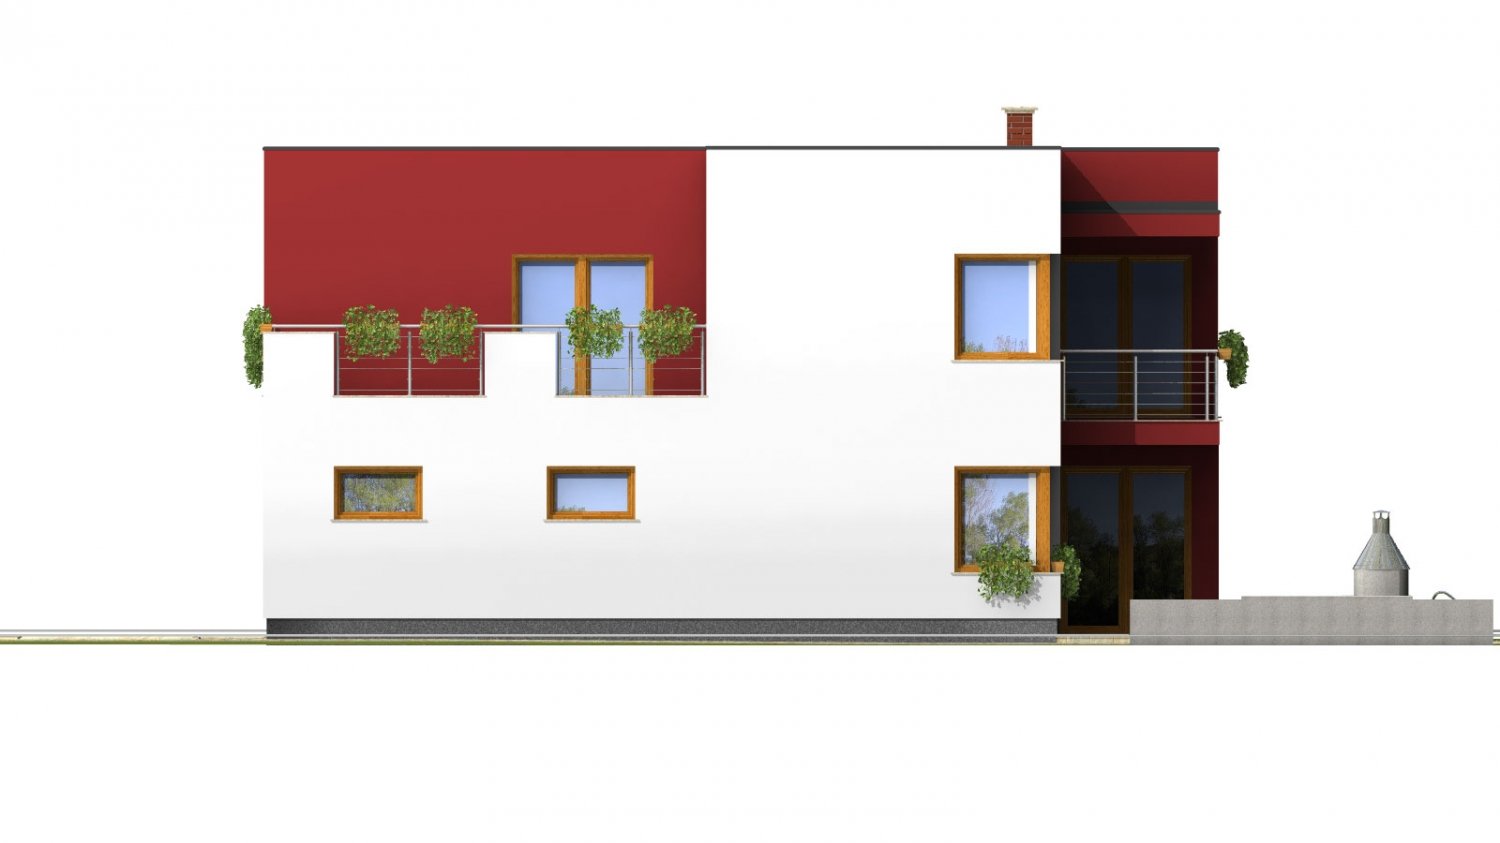 Zrkadlový pohľad 4. - Moderní exkluzivní dům s dvojgaráží a plochou střechou.